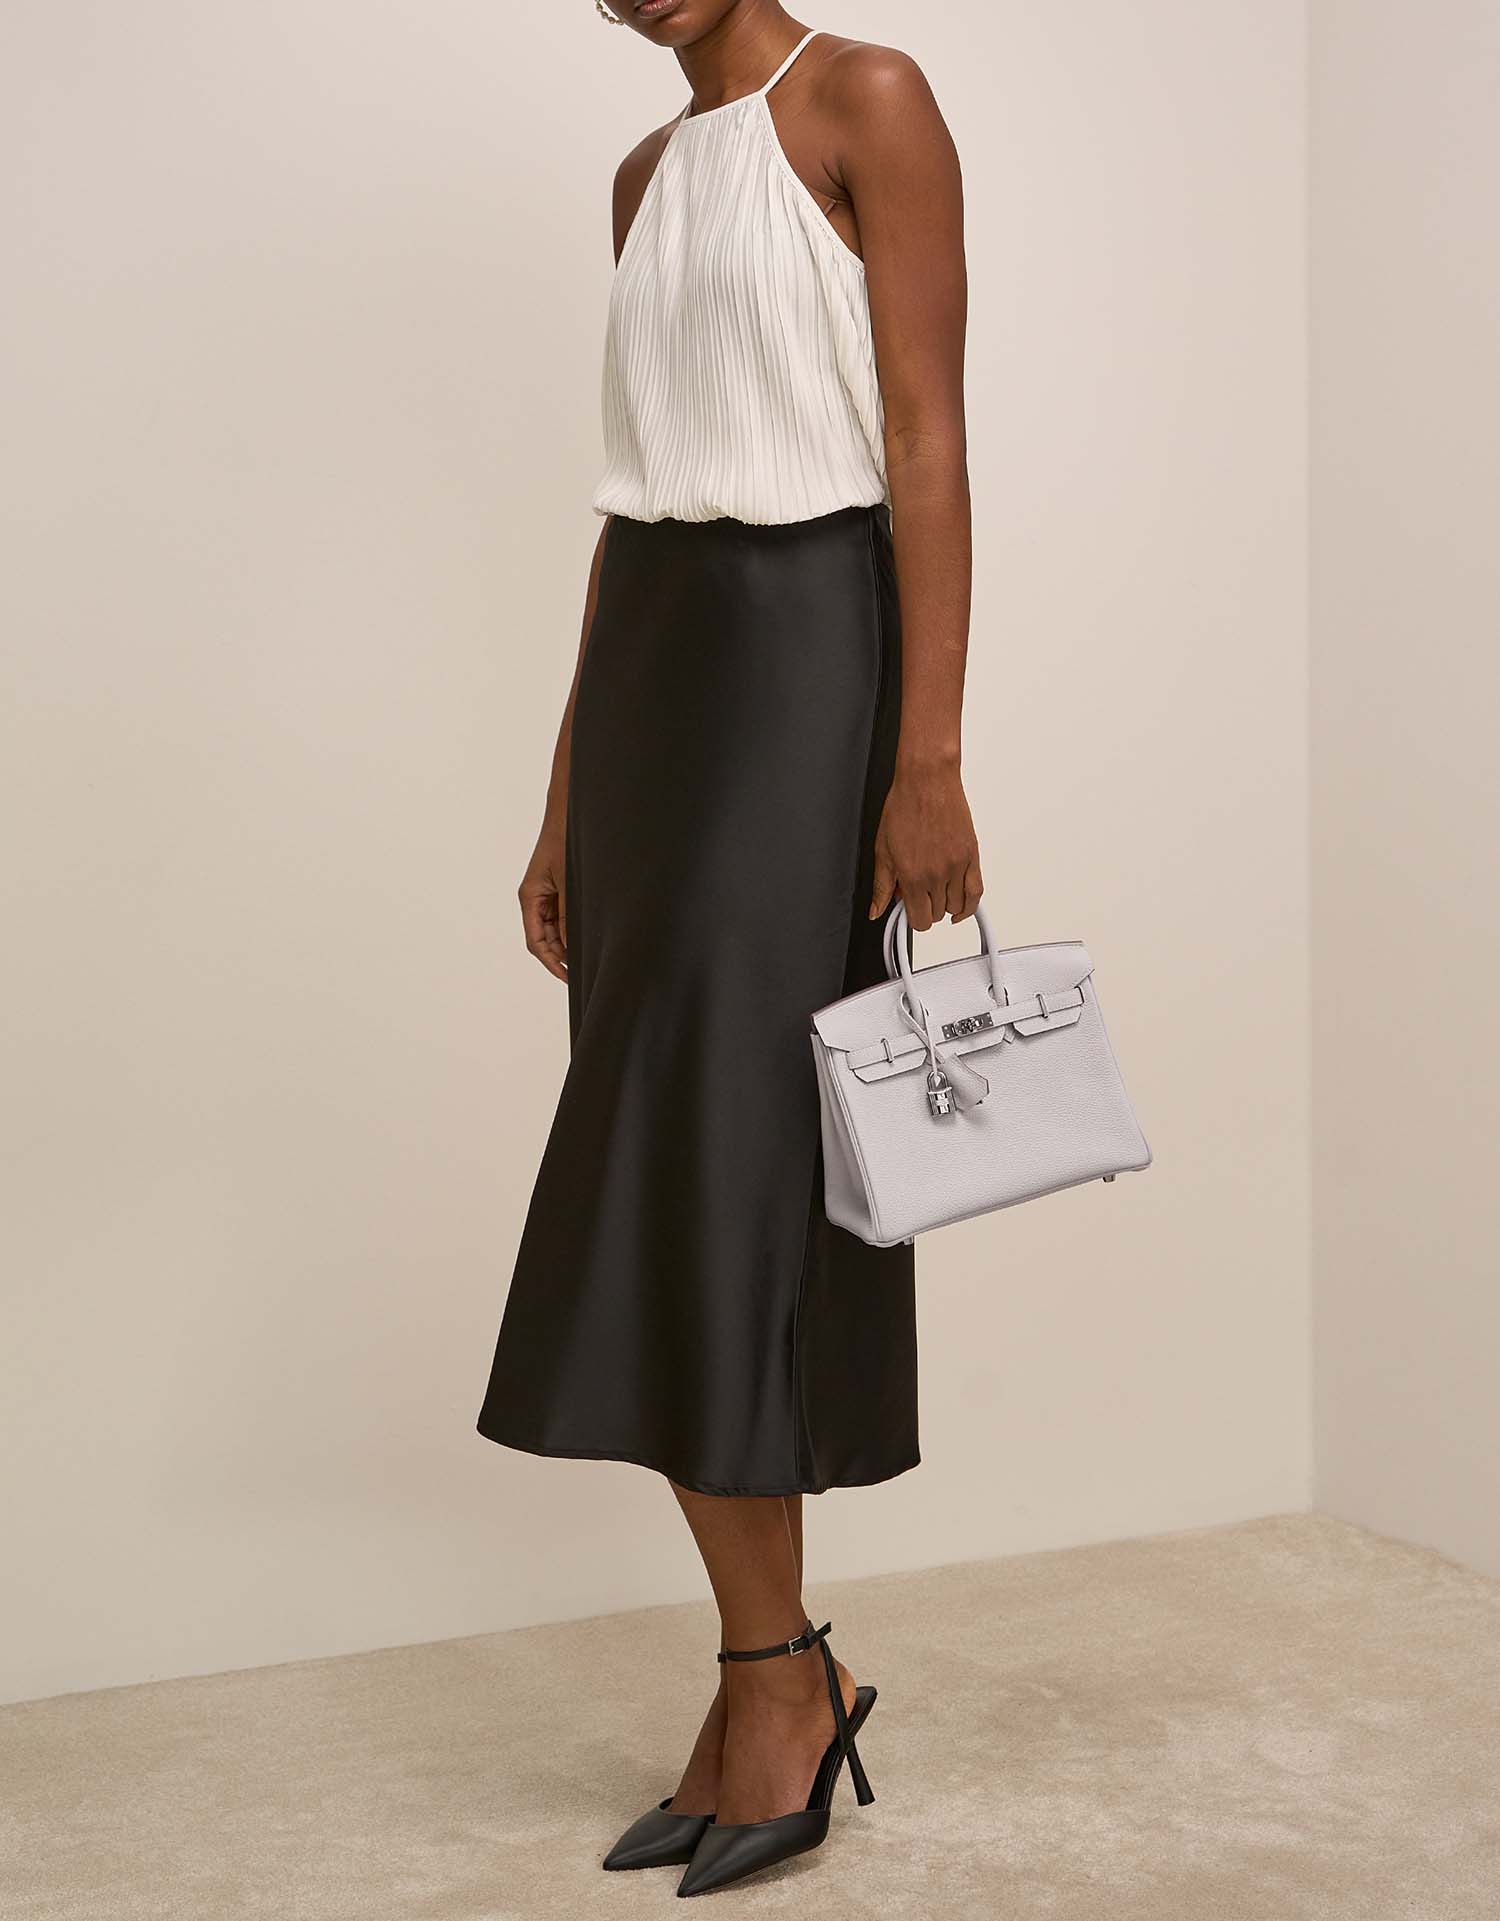 Hermès Birkin 25 GrisPale auf Model | Verkaufen Sie Ihre Designertasche auf Saclab.com